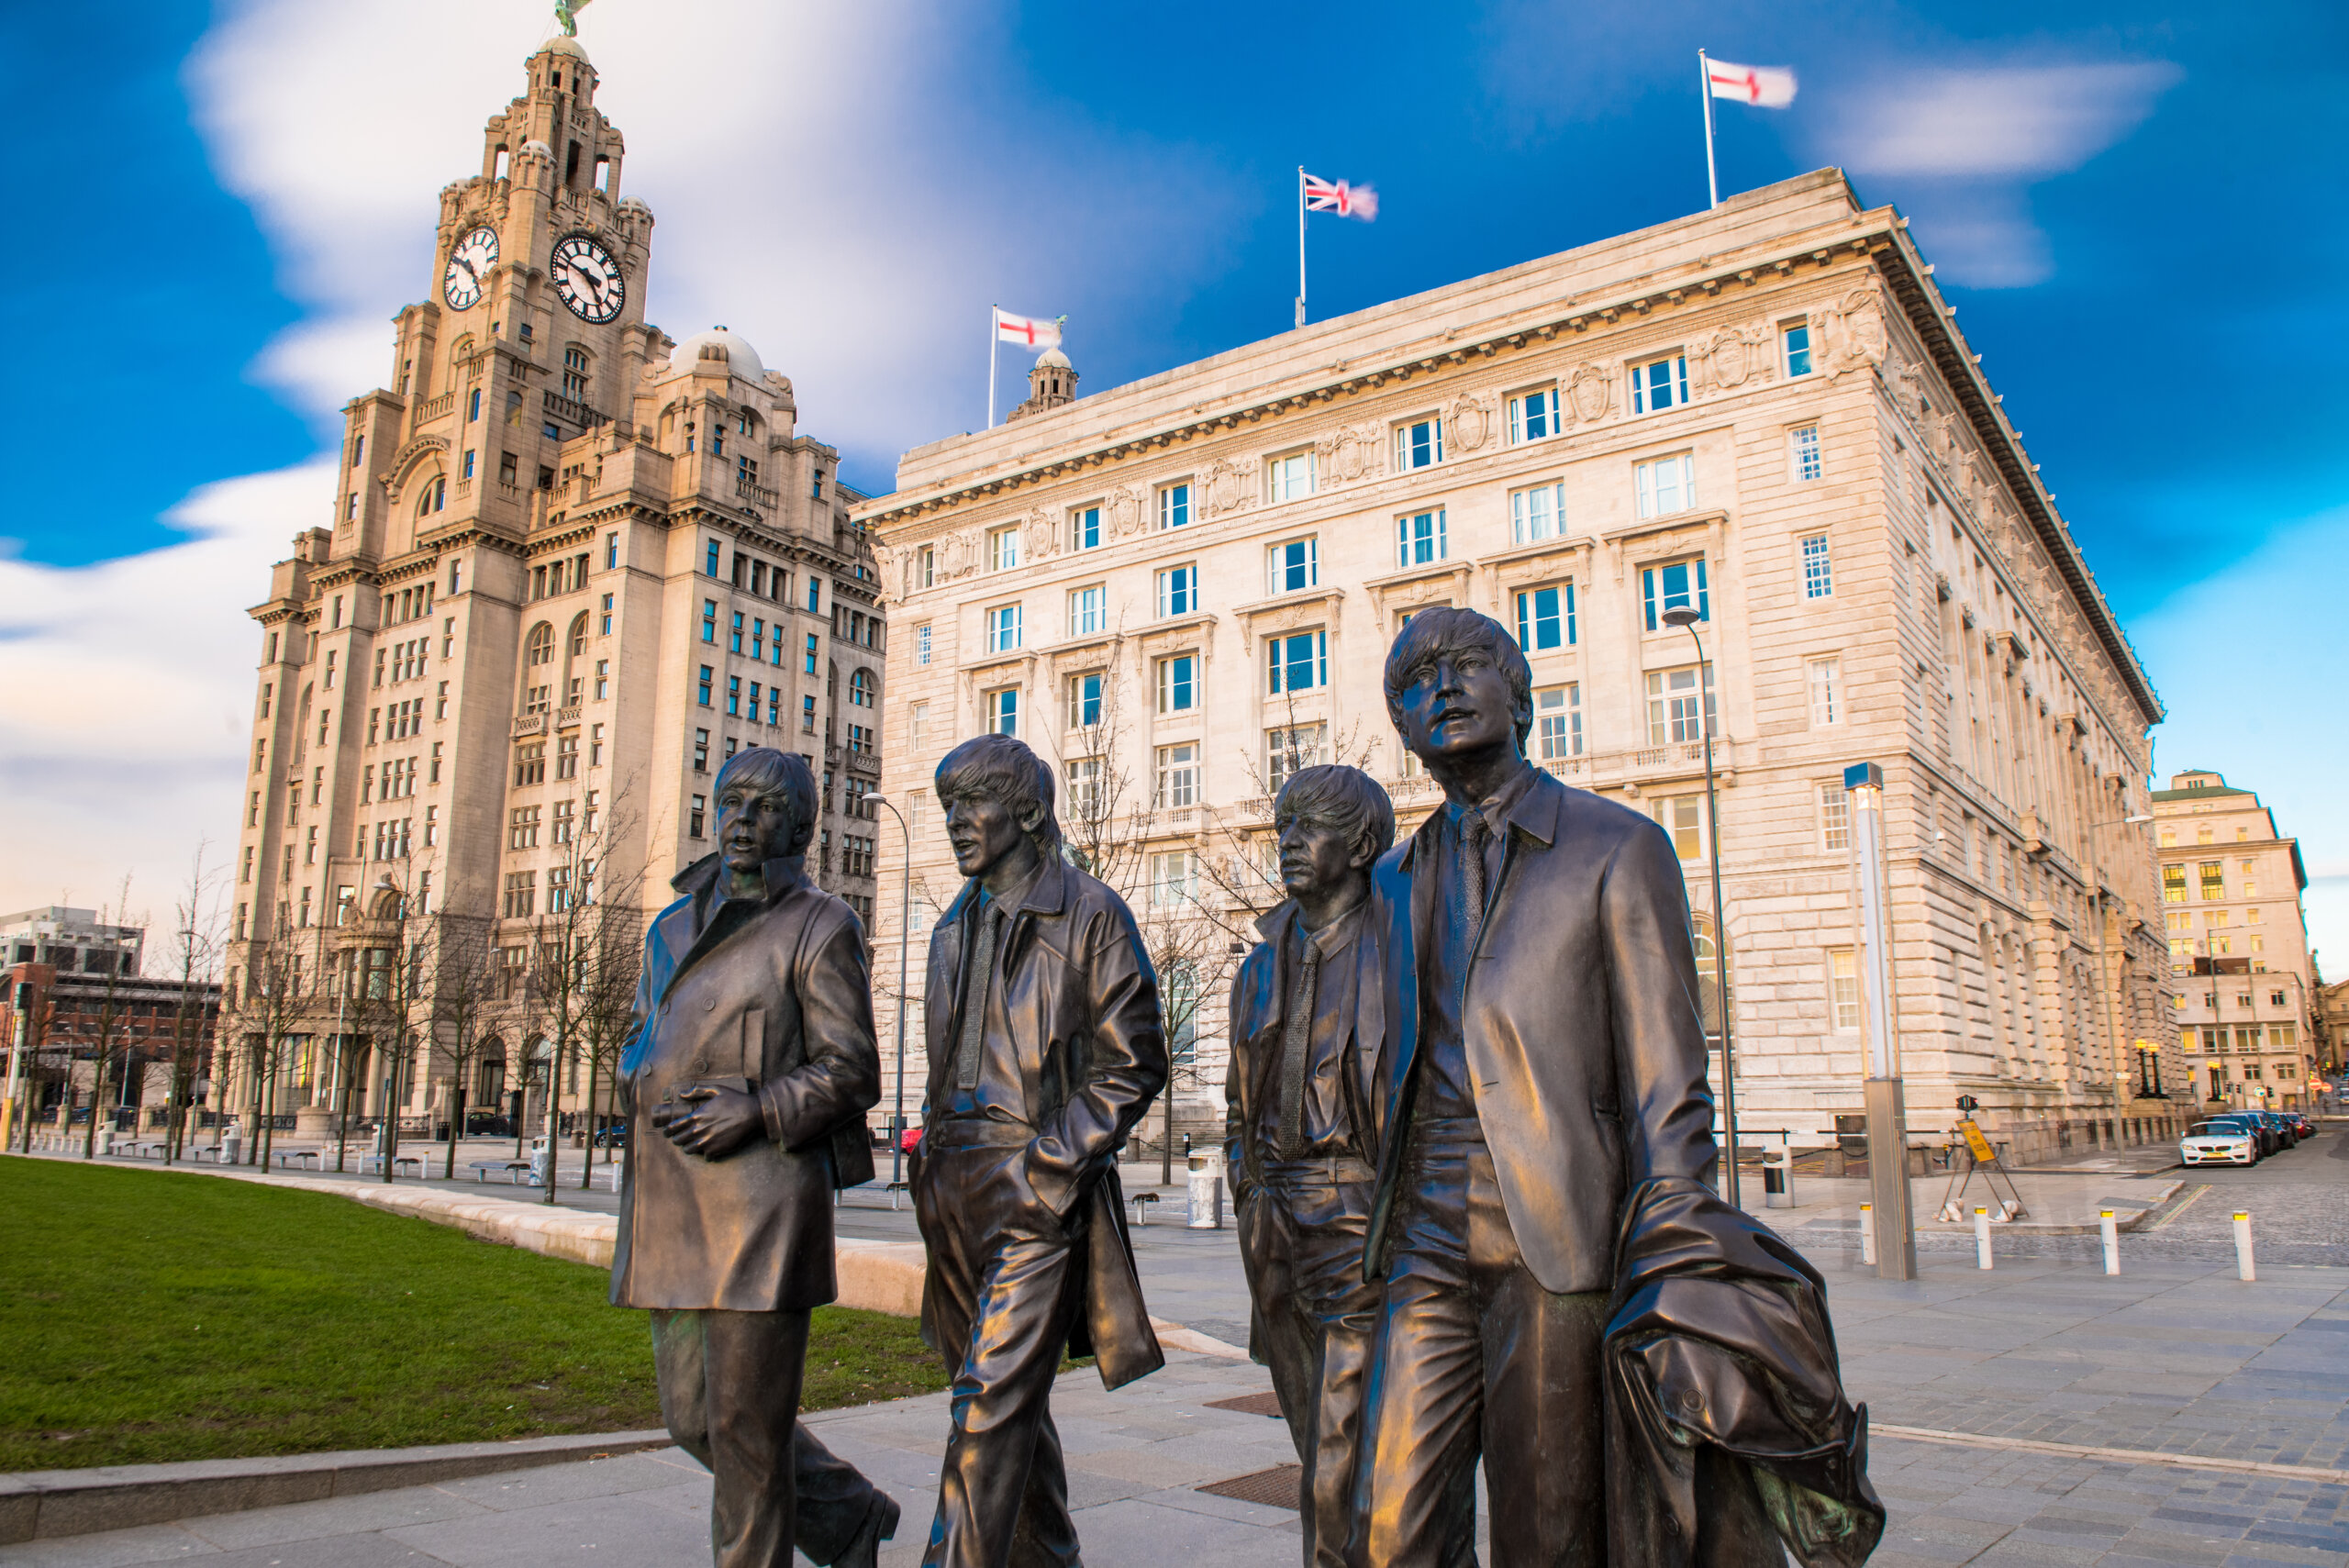 Liverpool, Wielka Brytania: 10 LUTEGO 2016 - Pomnik z brązu przedstawiający czterech Beatlesów z Liverpoolu, ważący 1,2 tony i wyrzeźbiony przez Andrew Edwardsa, stoi na nabrzeżu Liverpoolu.